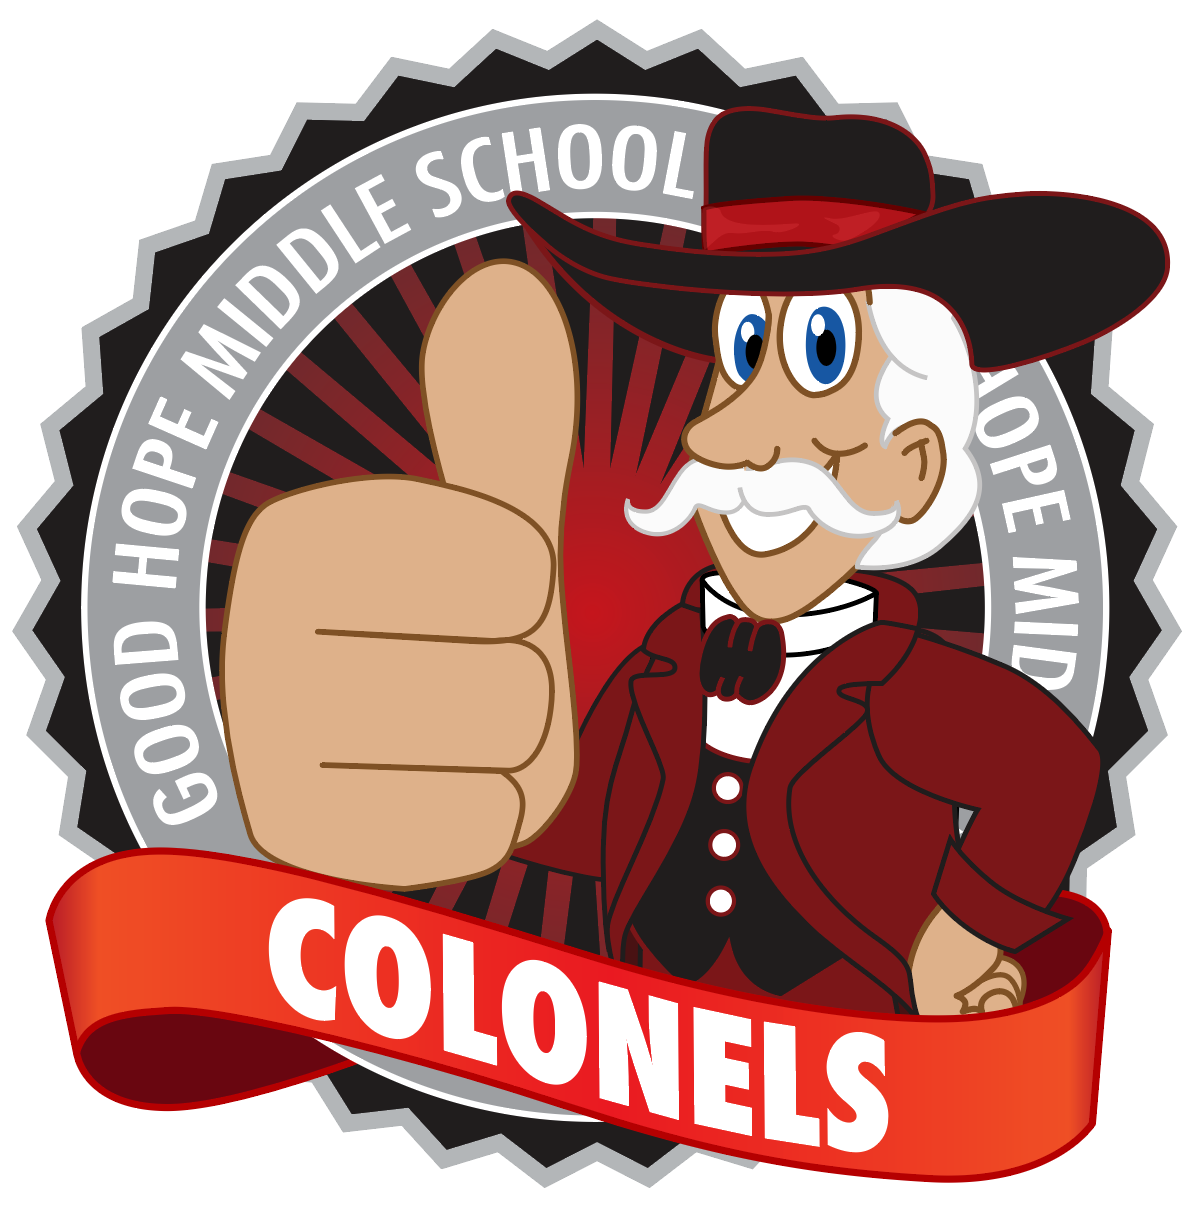 Colonel Mascot Logo.